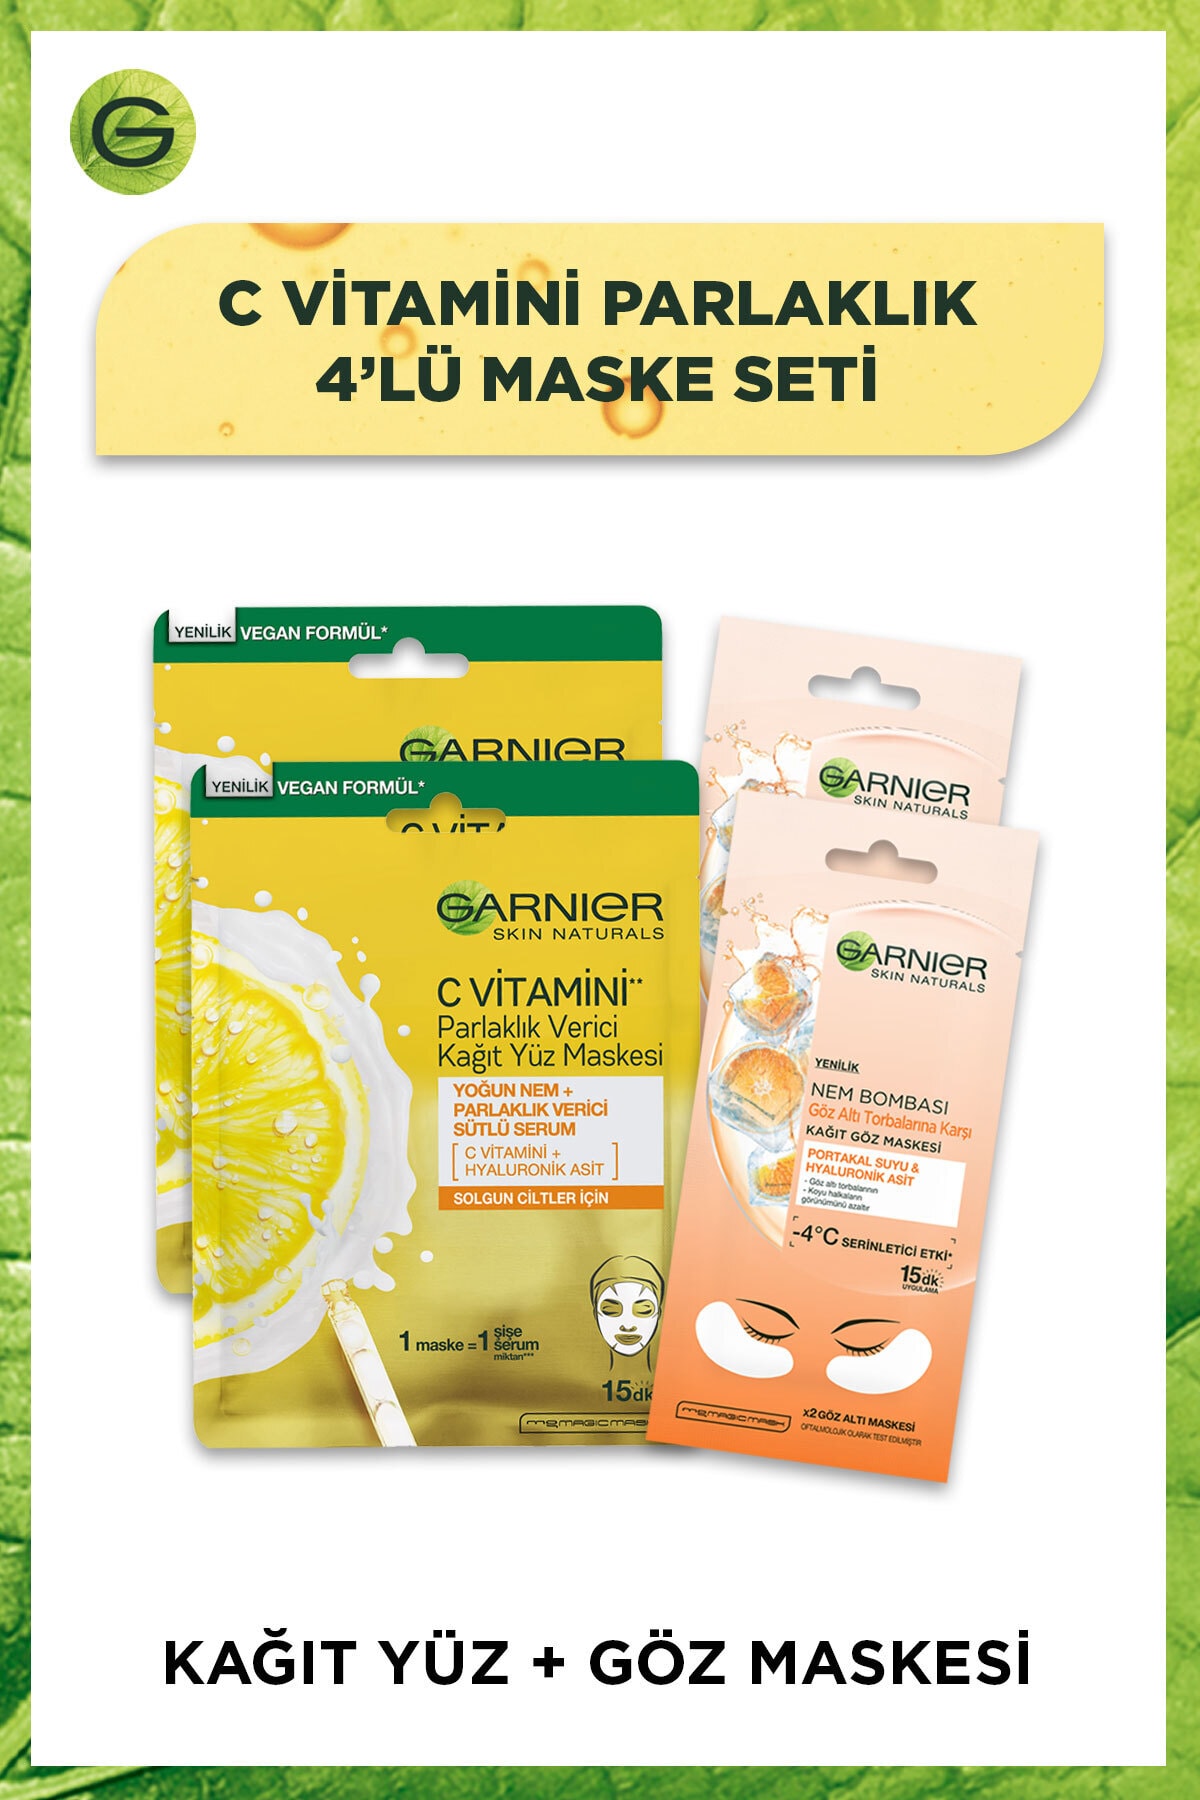 Garnier C Vitamini Parlaklık Verici Yüz Maskesi & Göz Altı Torbalarına Karşı Göz Maskesi 4'lü Set